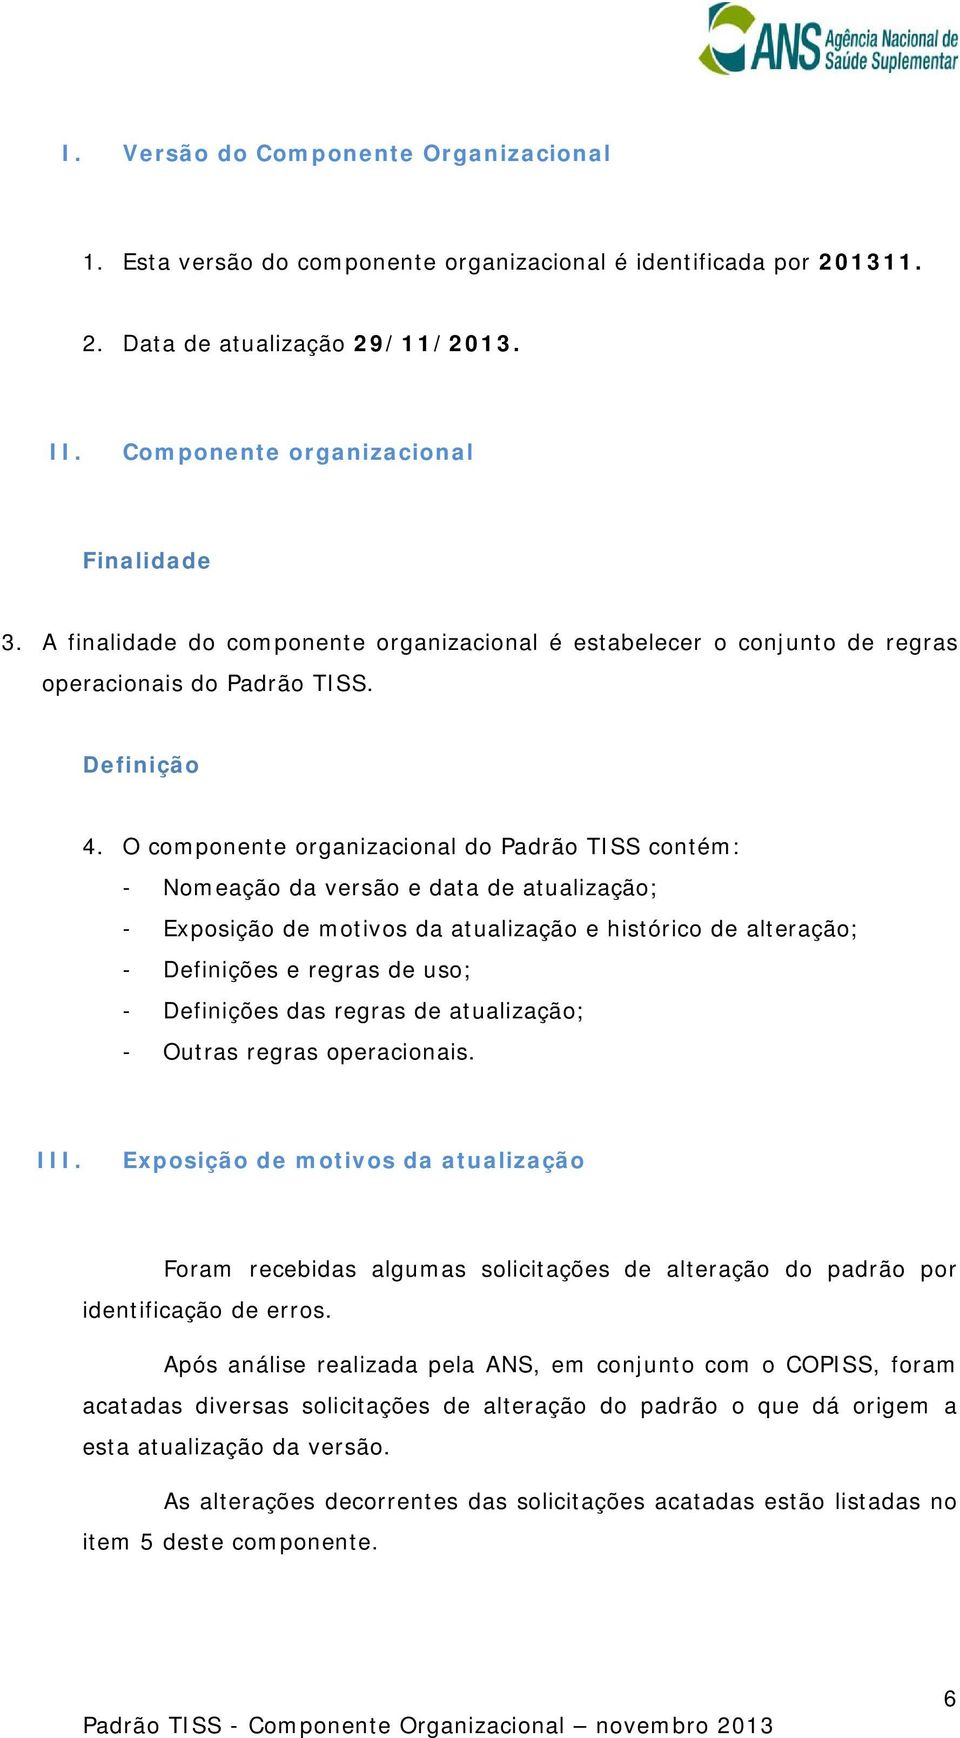 O componente organizacional do Padrão TISS contém: - Nomeação da versão e data de atualização; - Exposição de motivos da atualização e histórico de alteração; - Definições e regras de uso; -